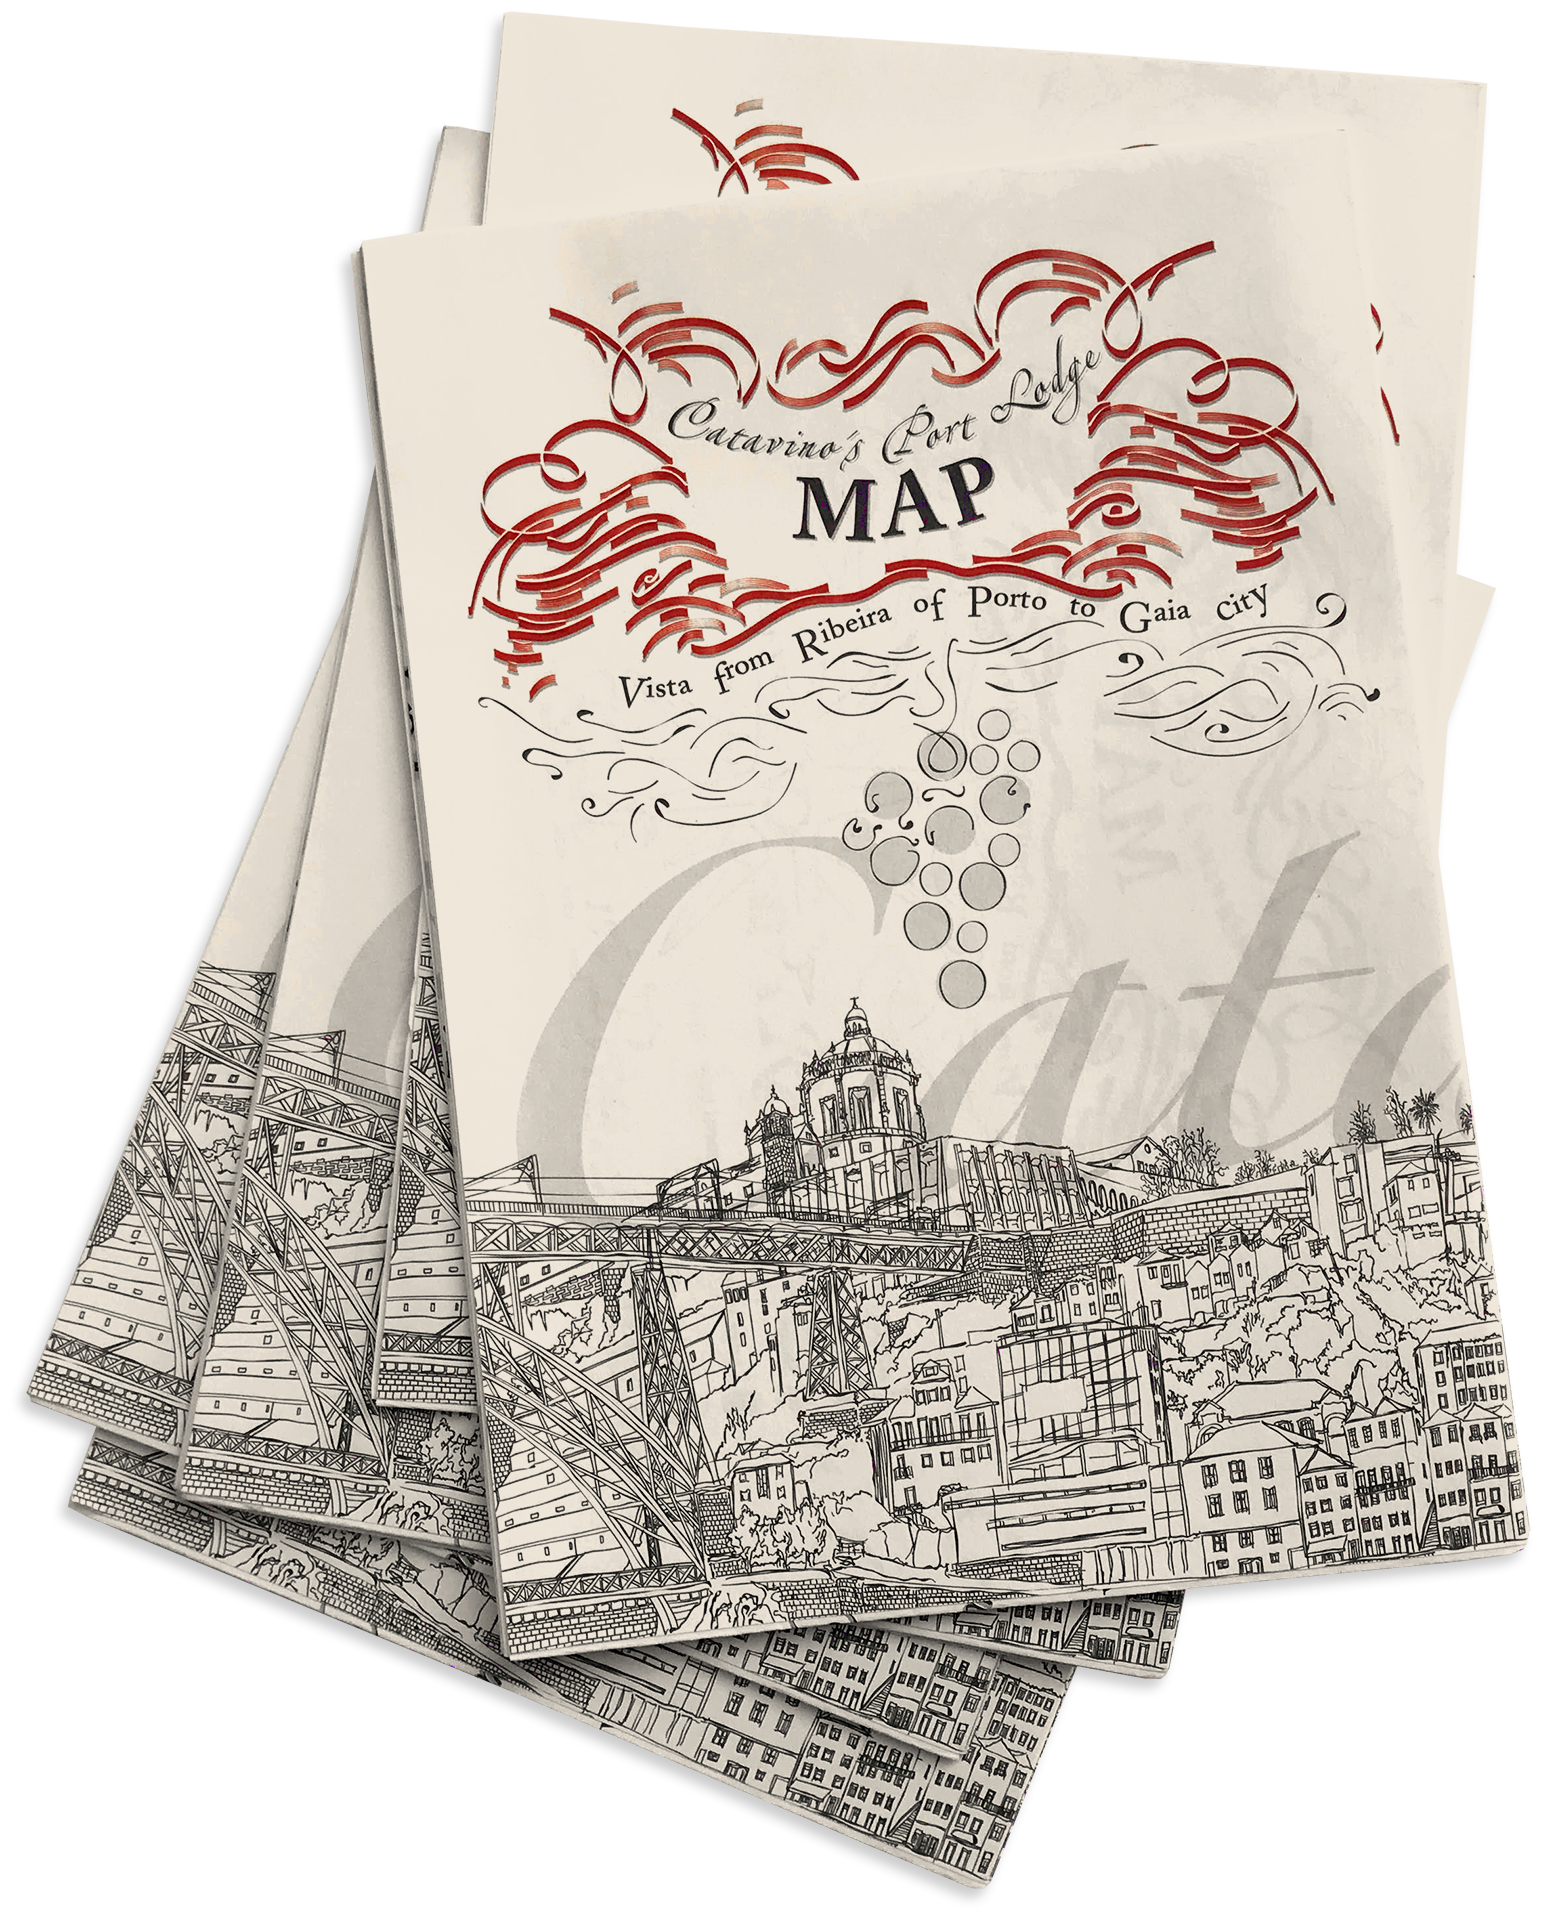 Mapa das Caves de Vinho do Porto Catavinos Port Lodge Map Paper Folded